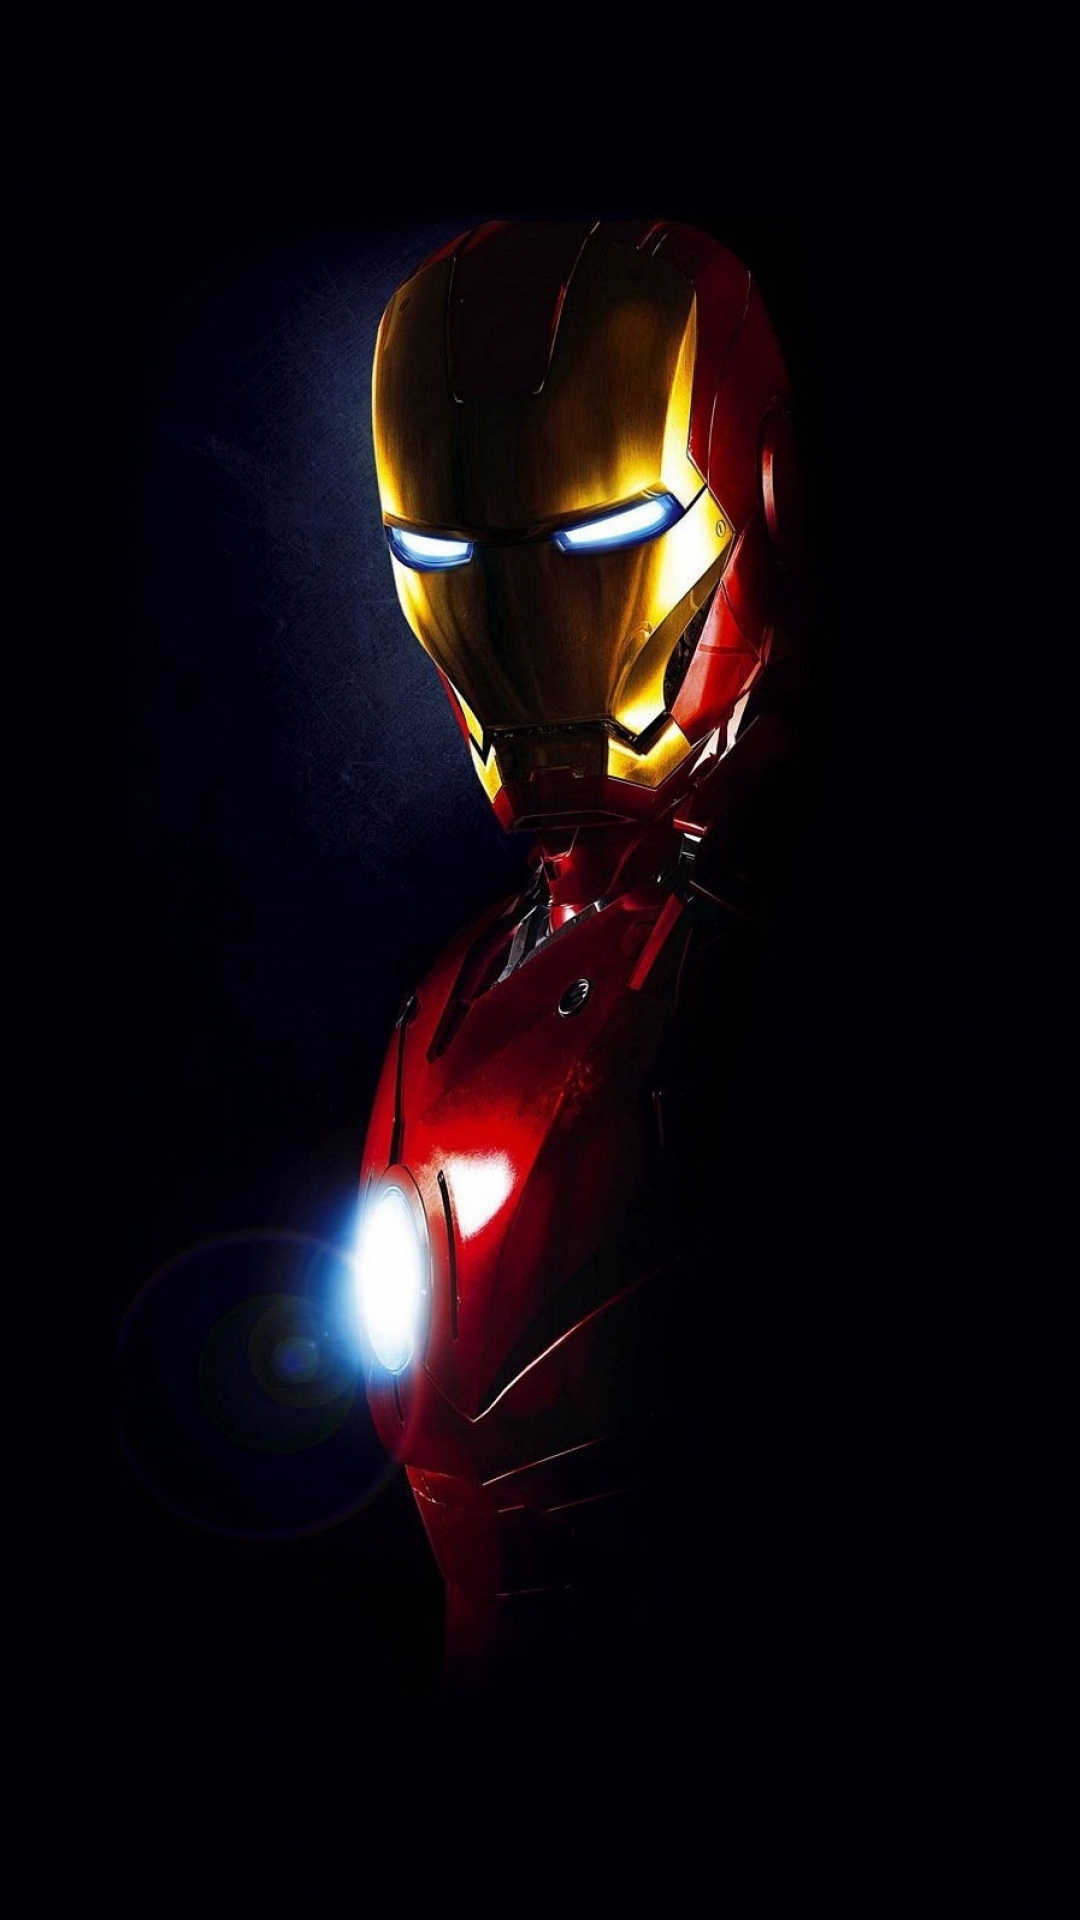 Iron man: Rực rỡ trên màn hình là sự xuất hiện của siêu nhân người máy chuyên nghiệp, siêu anh hùng Iron Man. Với đủ các phiên bản, Iron Man là ngôi sao trong các bộ phim hành động, phiêu lưu, kịch tính. Các fan hâm mộ của Iron Man hãy đến và chiêm ngưỡng sức mạnh và khả năng phi thường của người sắt này.